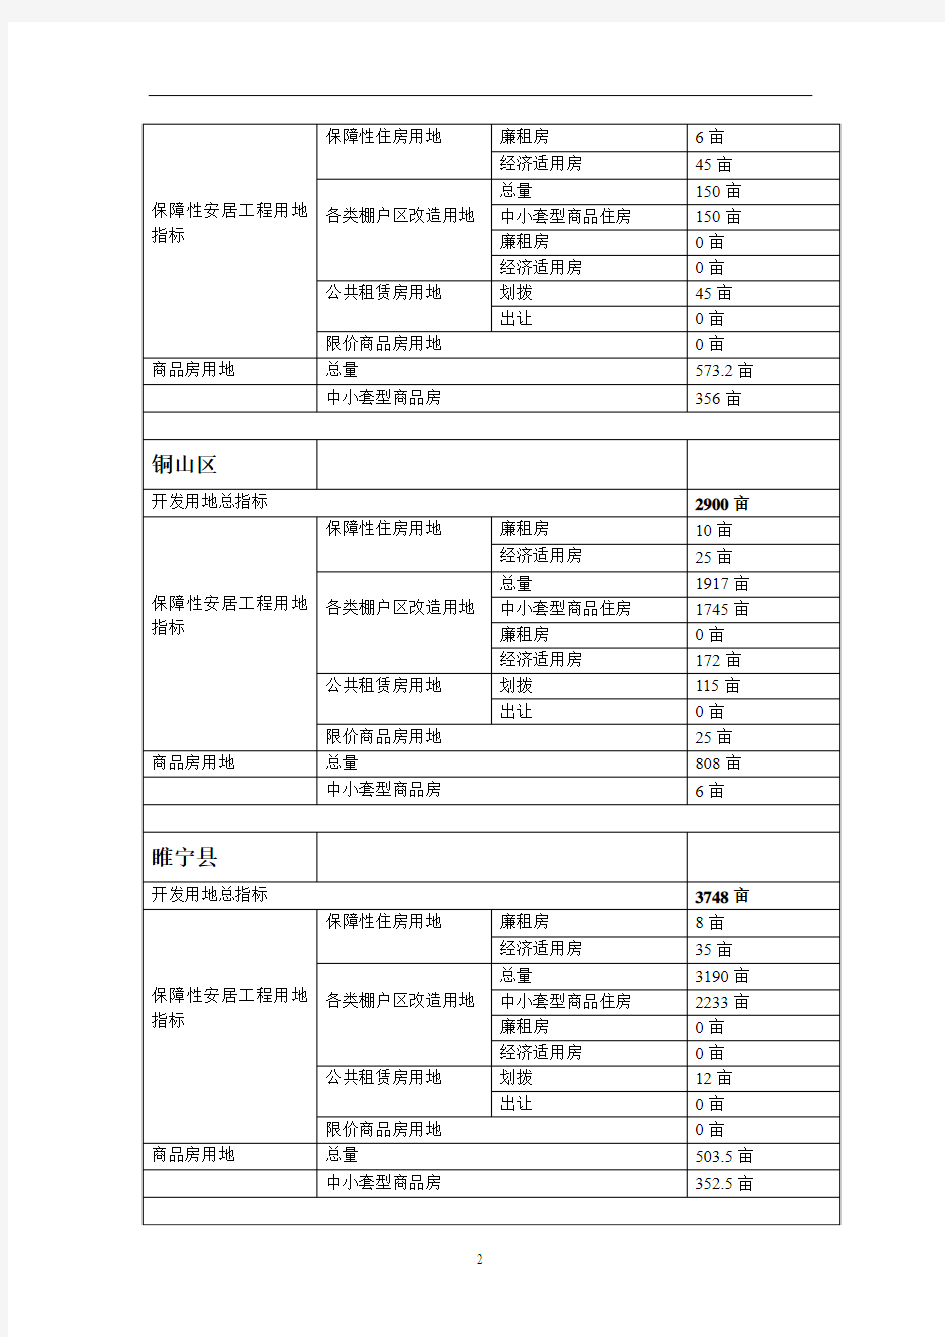 江苏省苏北地区2011年一级市场(土地市场)供应计划汇编